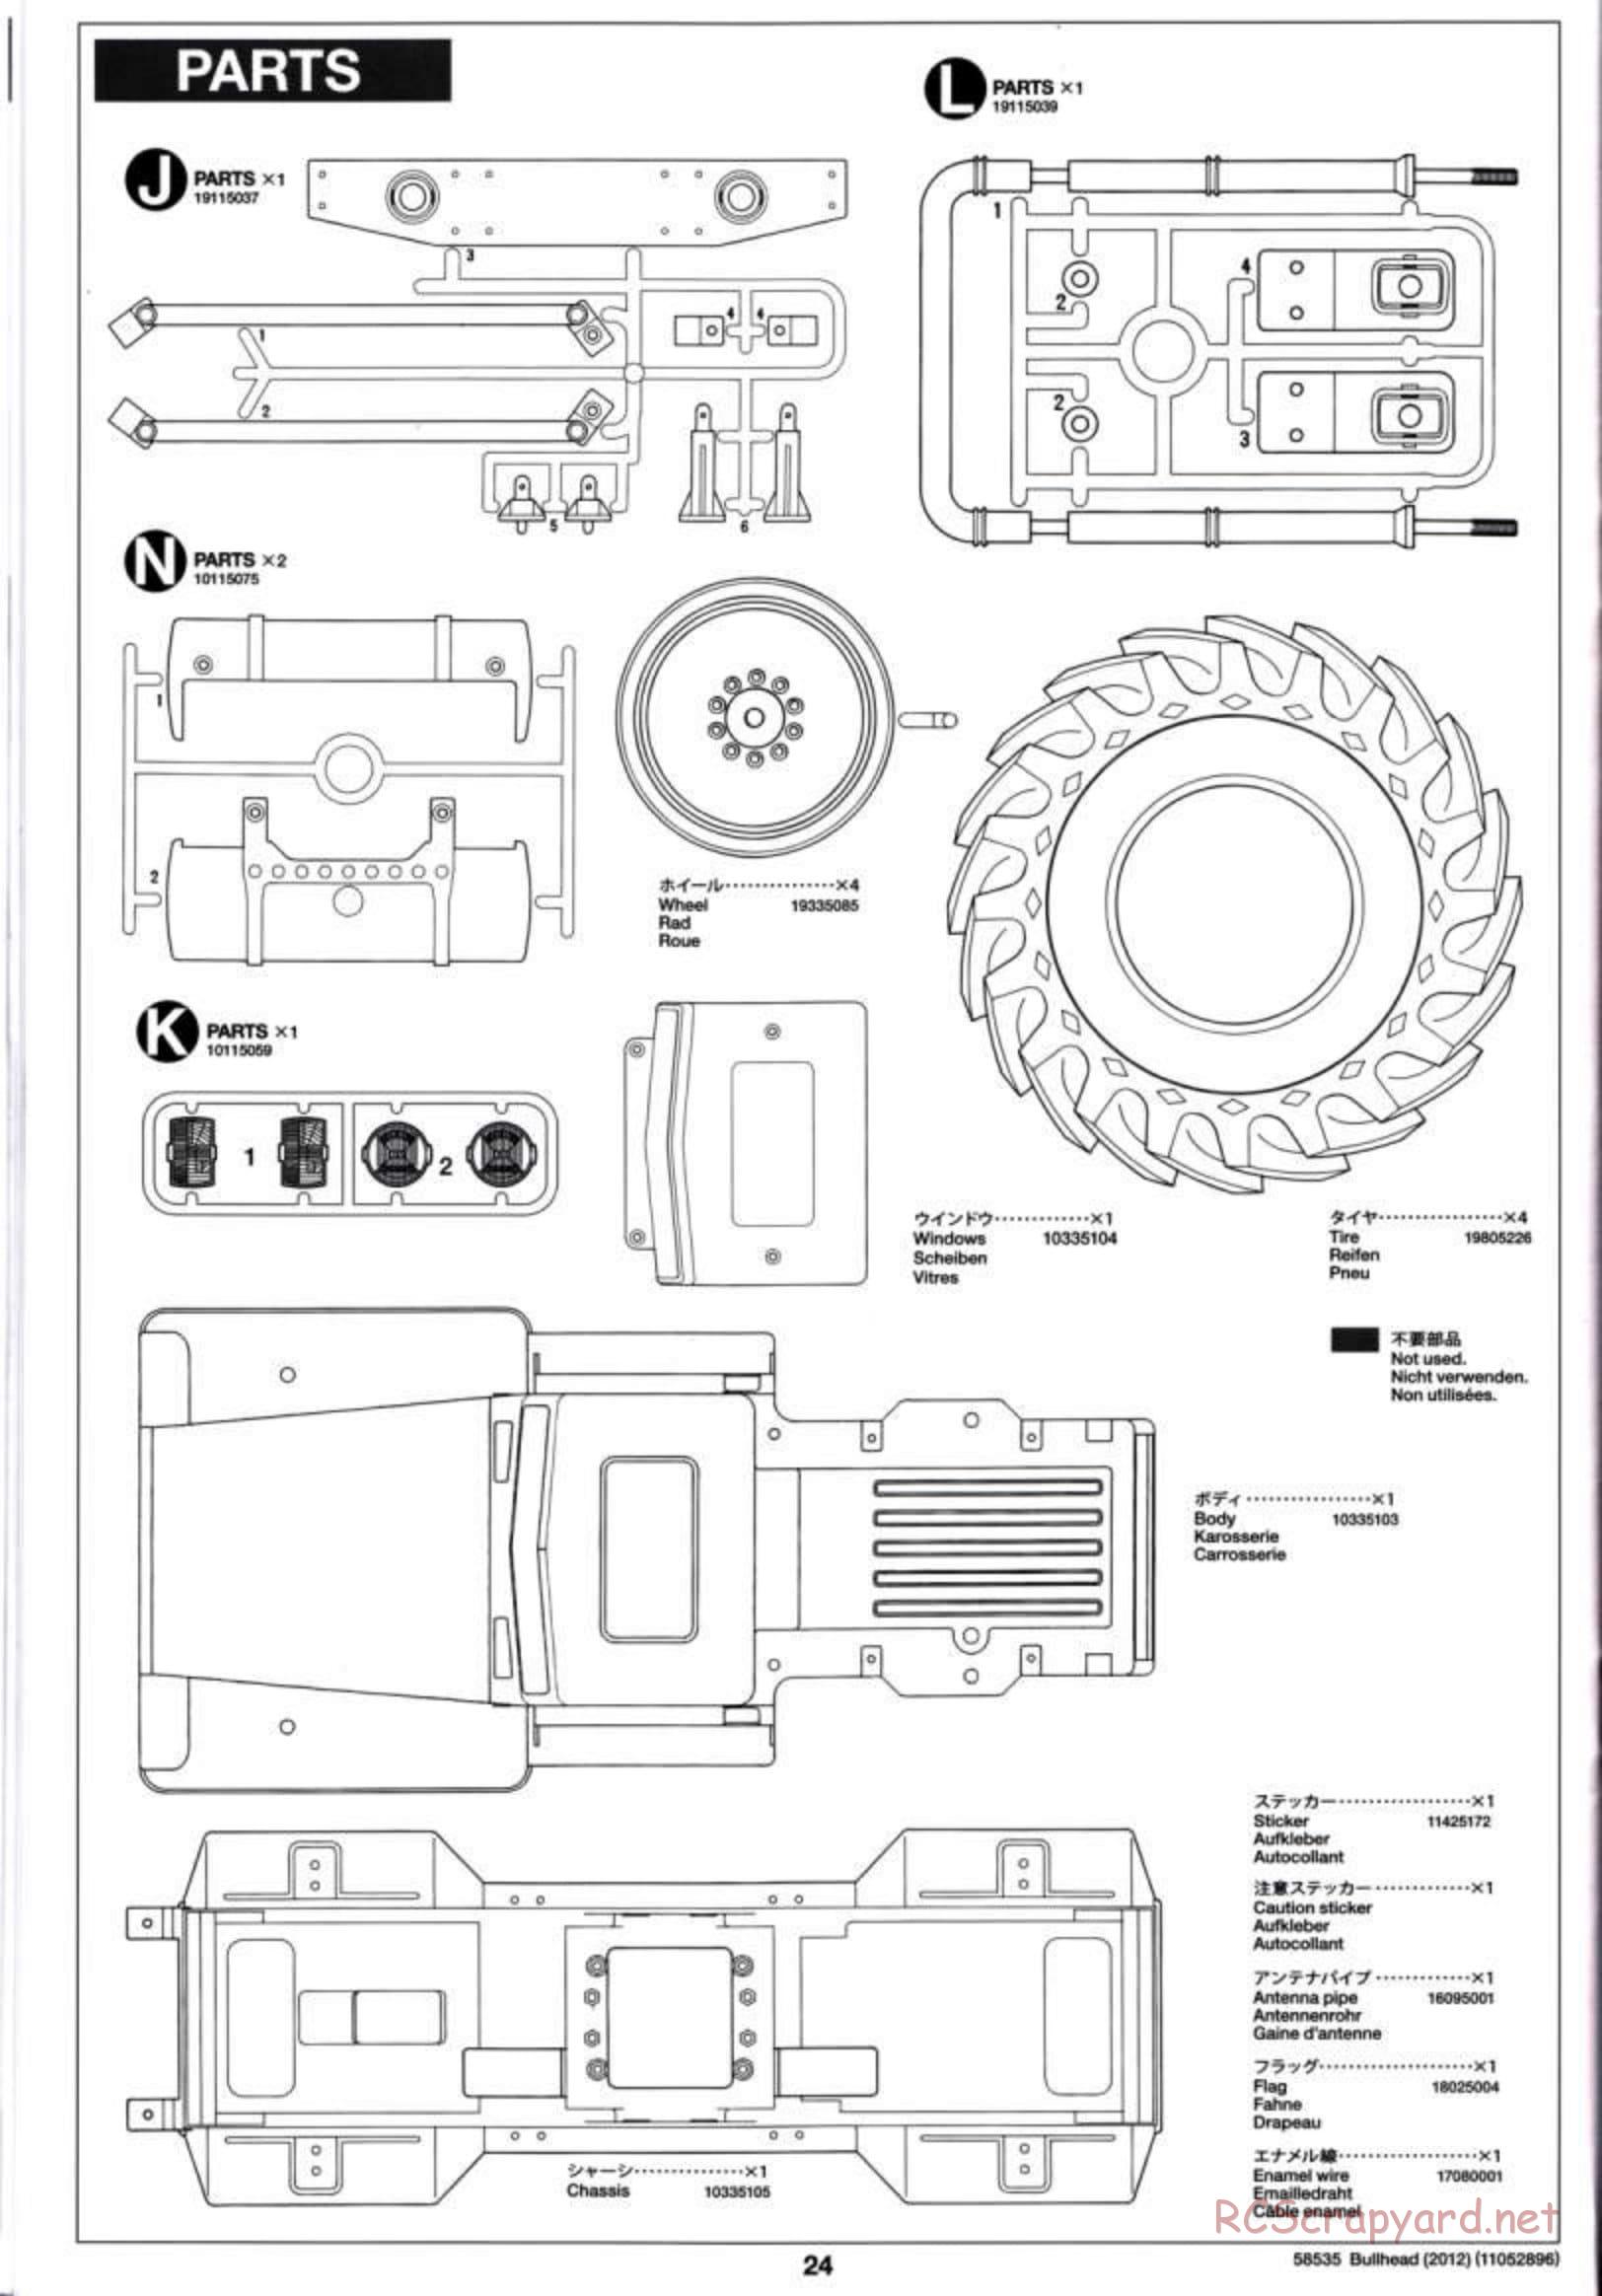 Tamiya - Bullhead 2012 - CB Chassis - Manual - Page 24